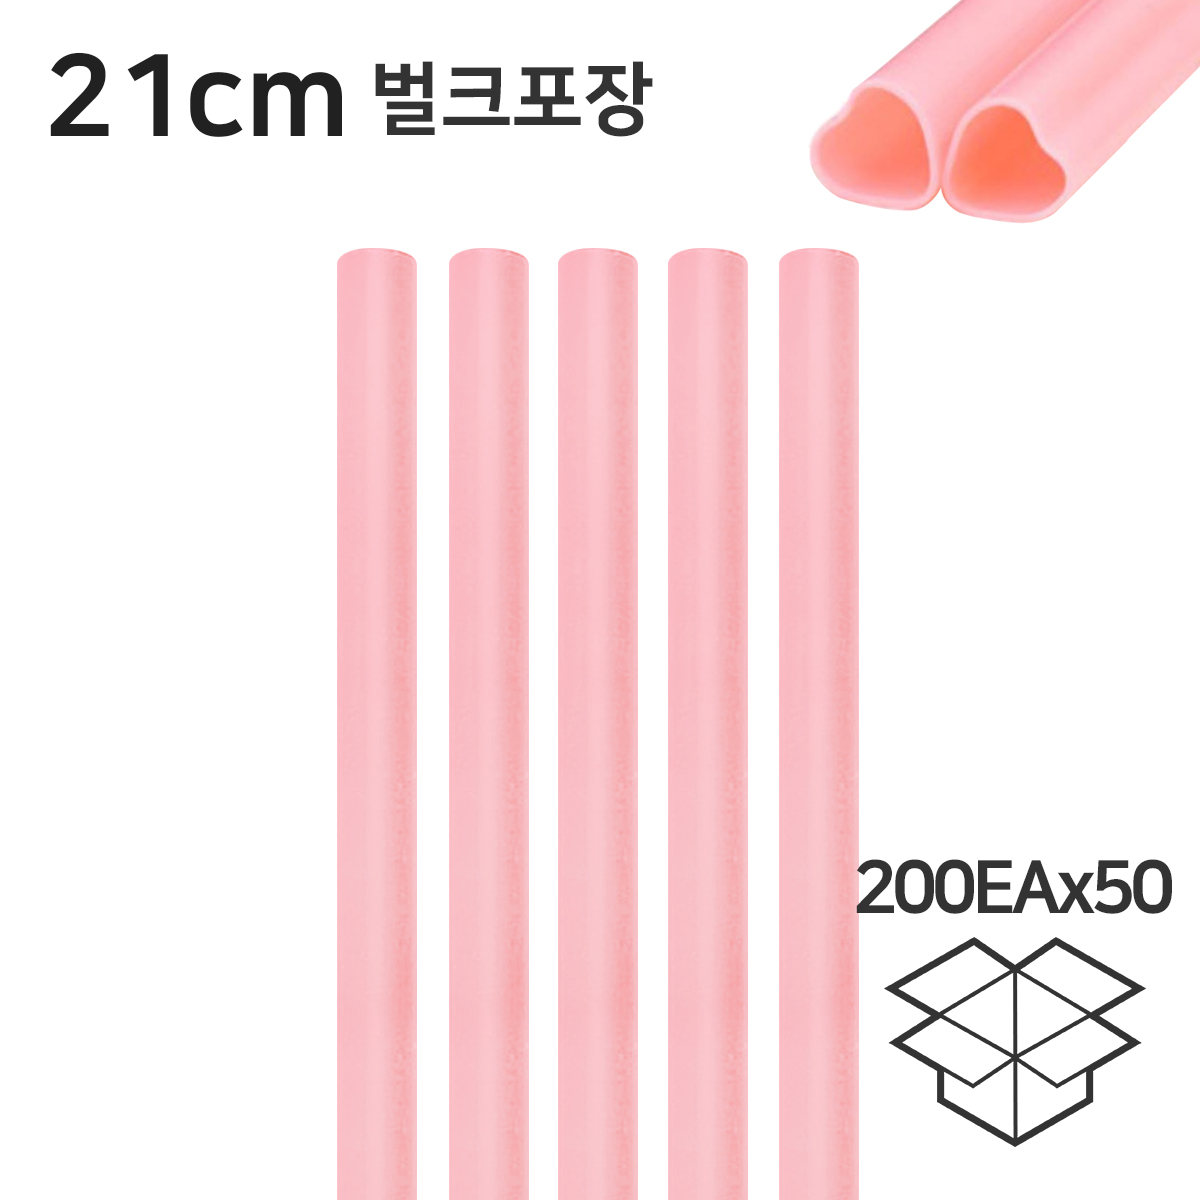 하트빨대 핑크 일자 스트로우 21cm 벌크 1박스(200개×50봉)